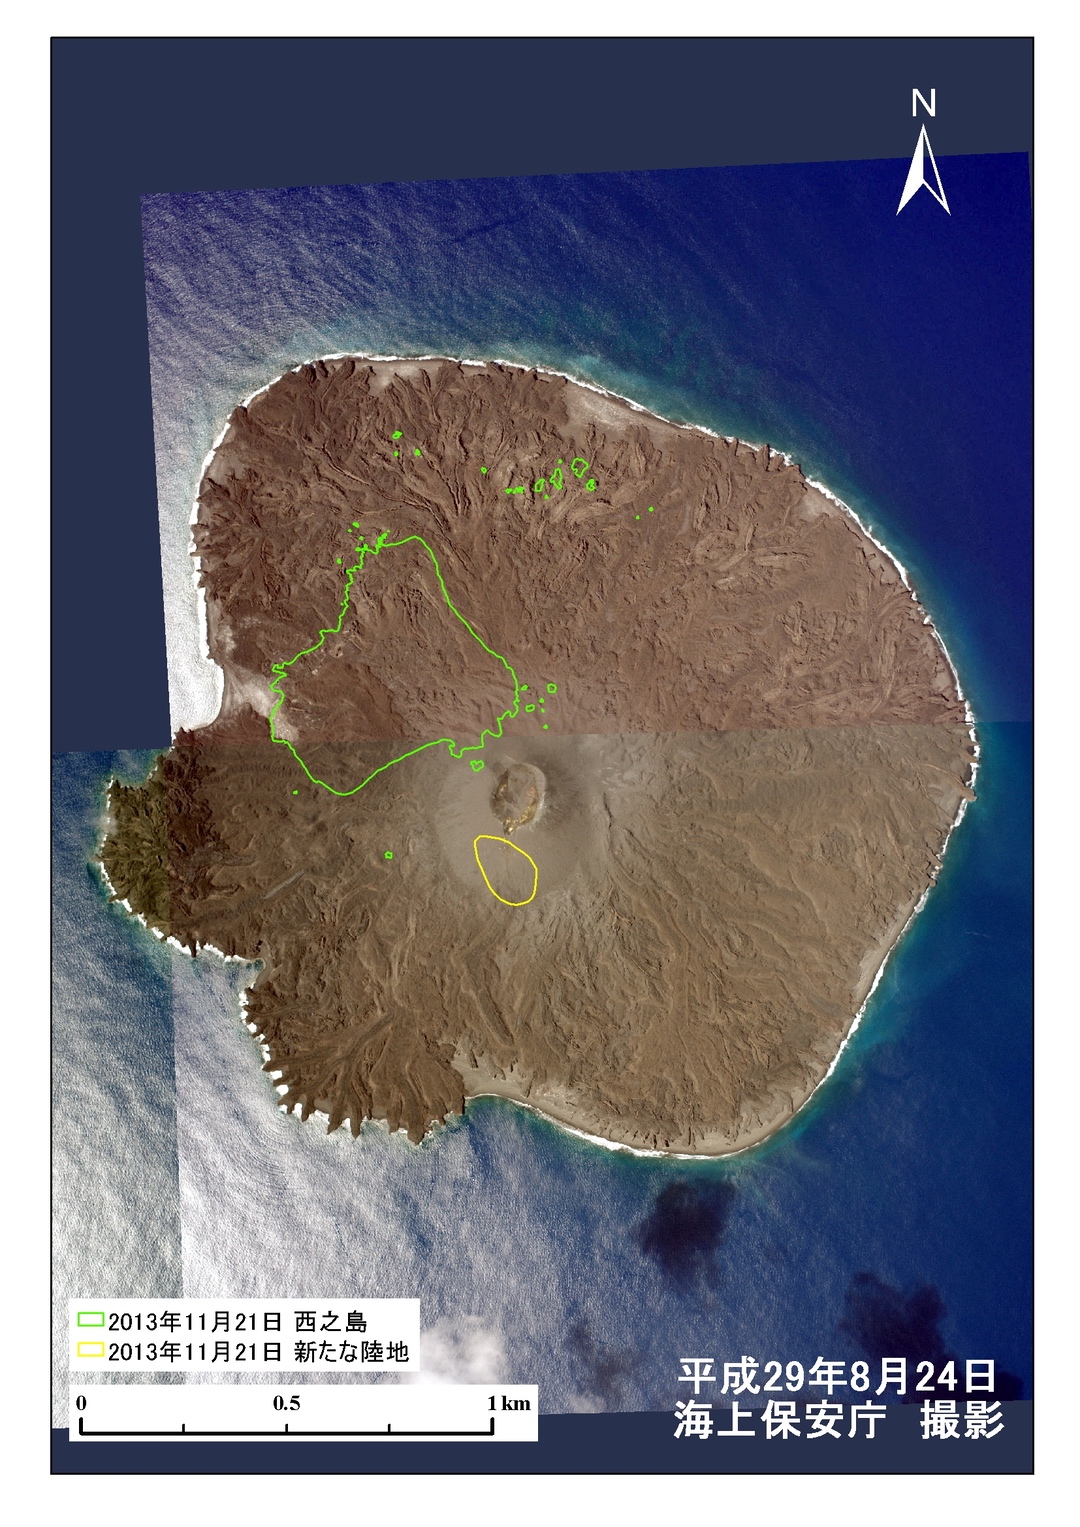 Grün: Die Inselform von 2013 / Gelb: Die Insel Nijima nach dem Vulkanausbruch von 2013.